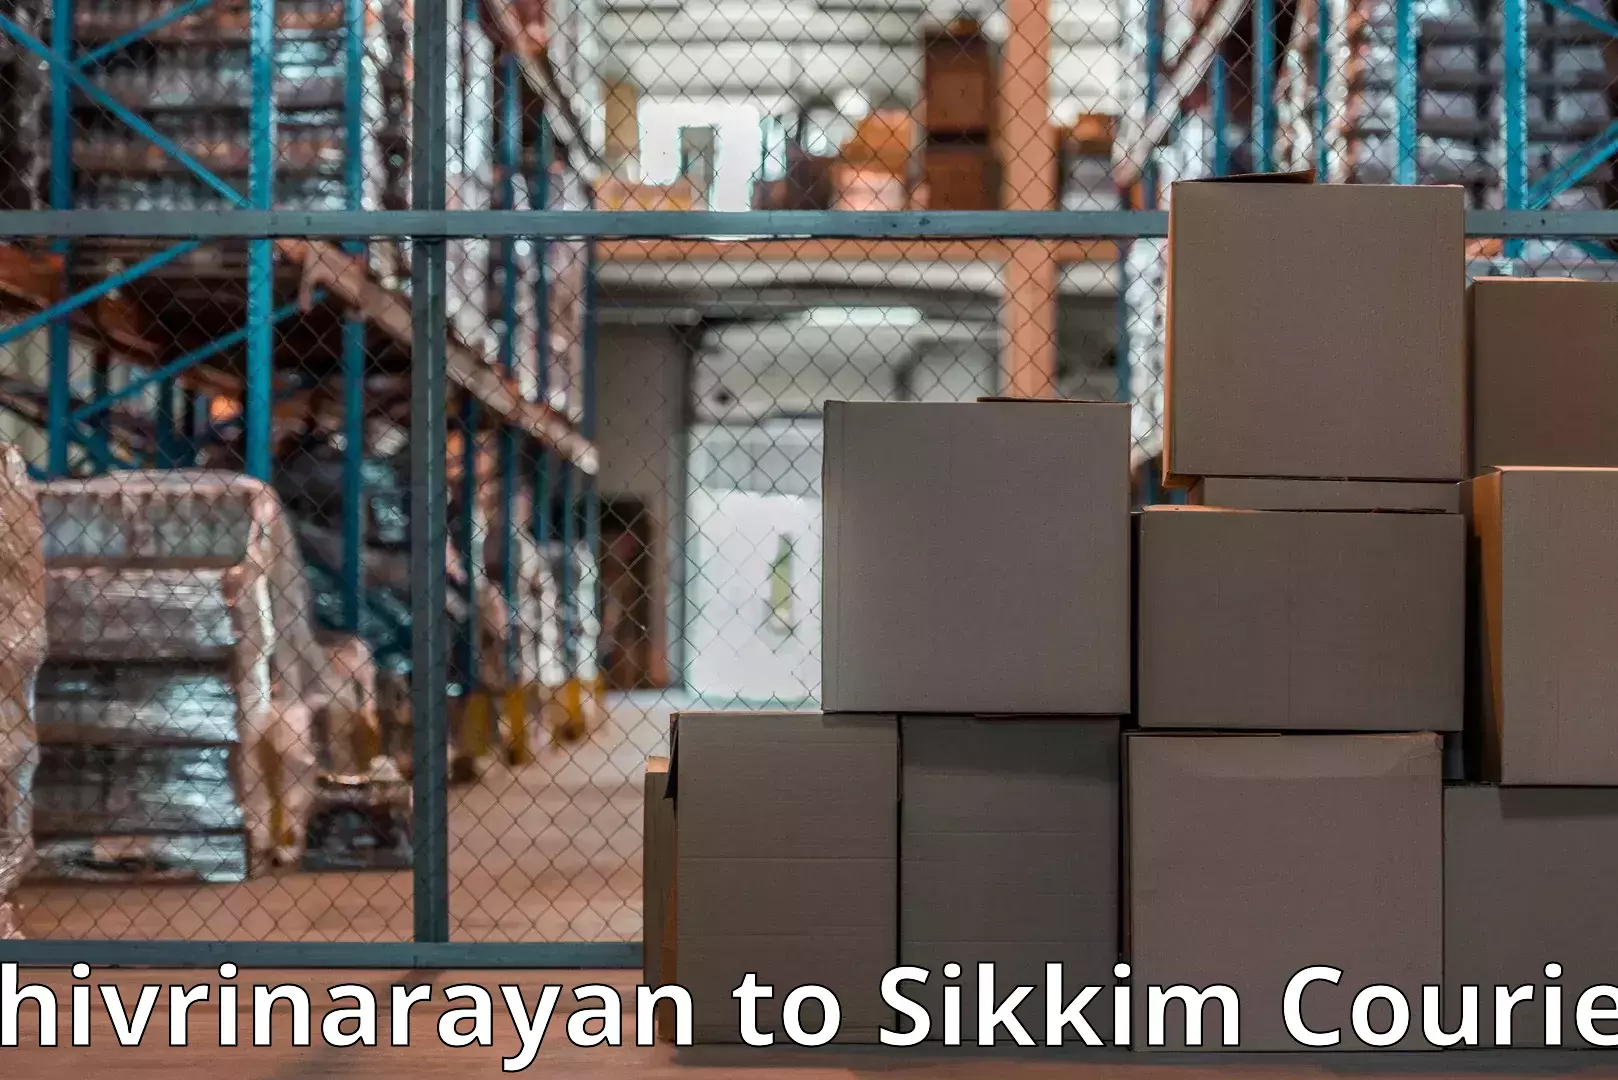 Moving and packing experts Shivrinarayan to Mangan